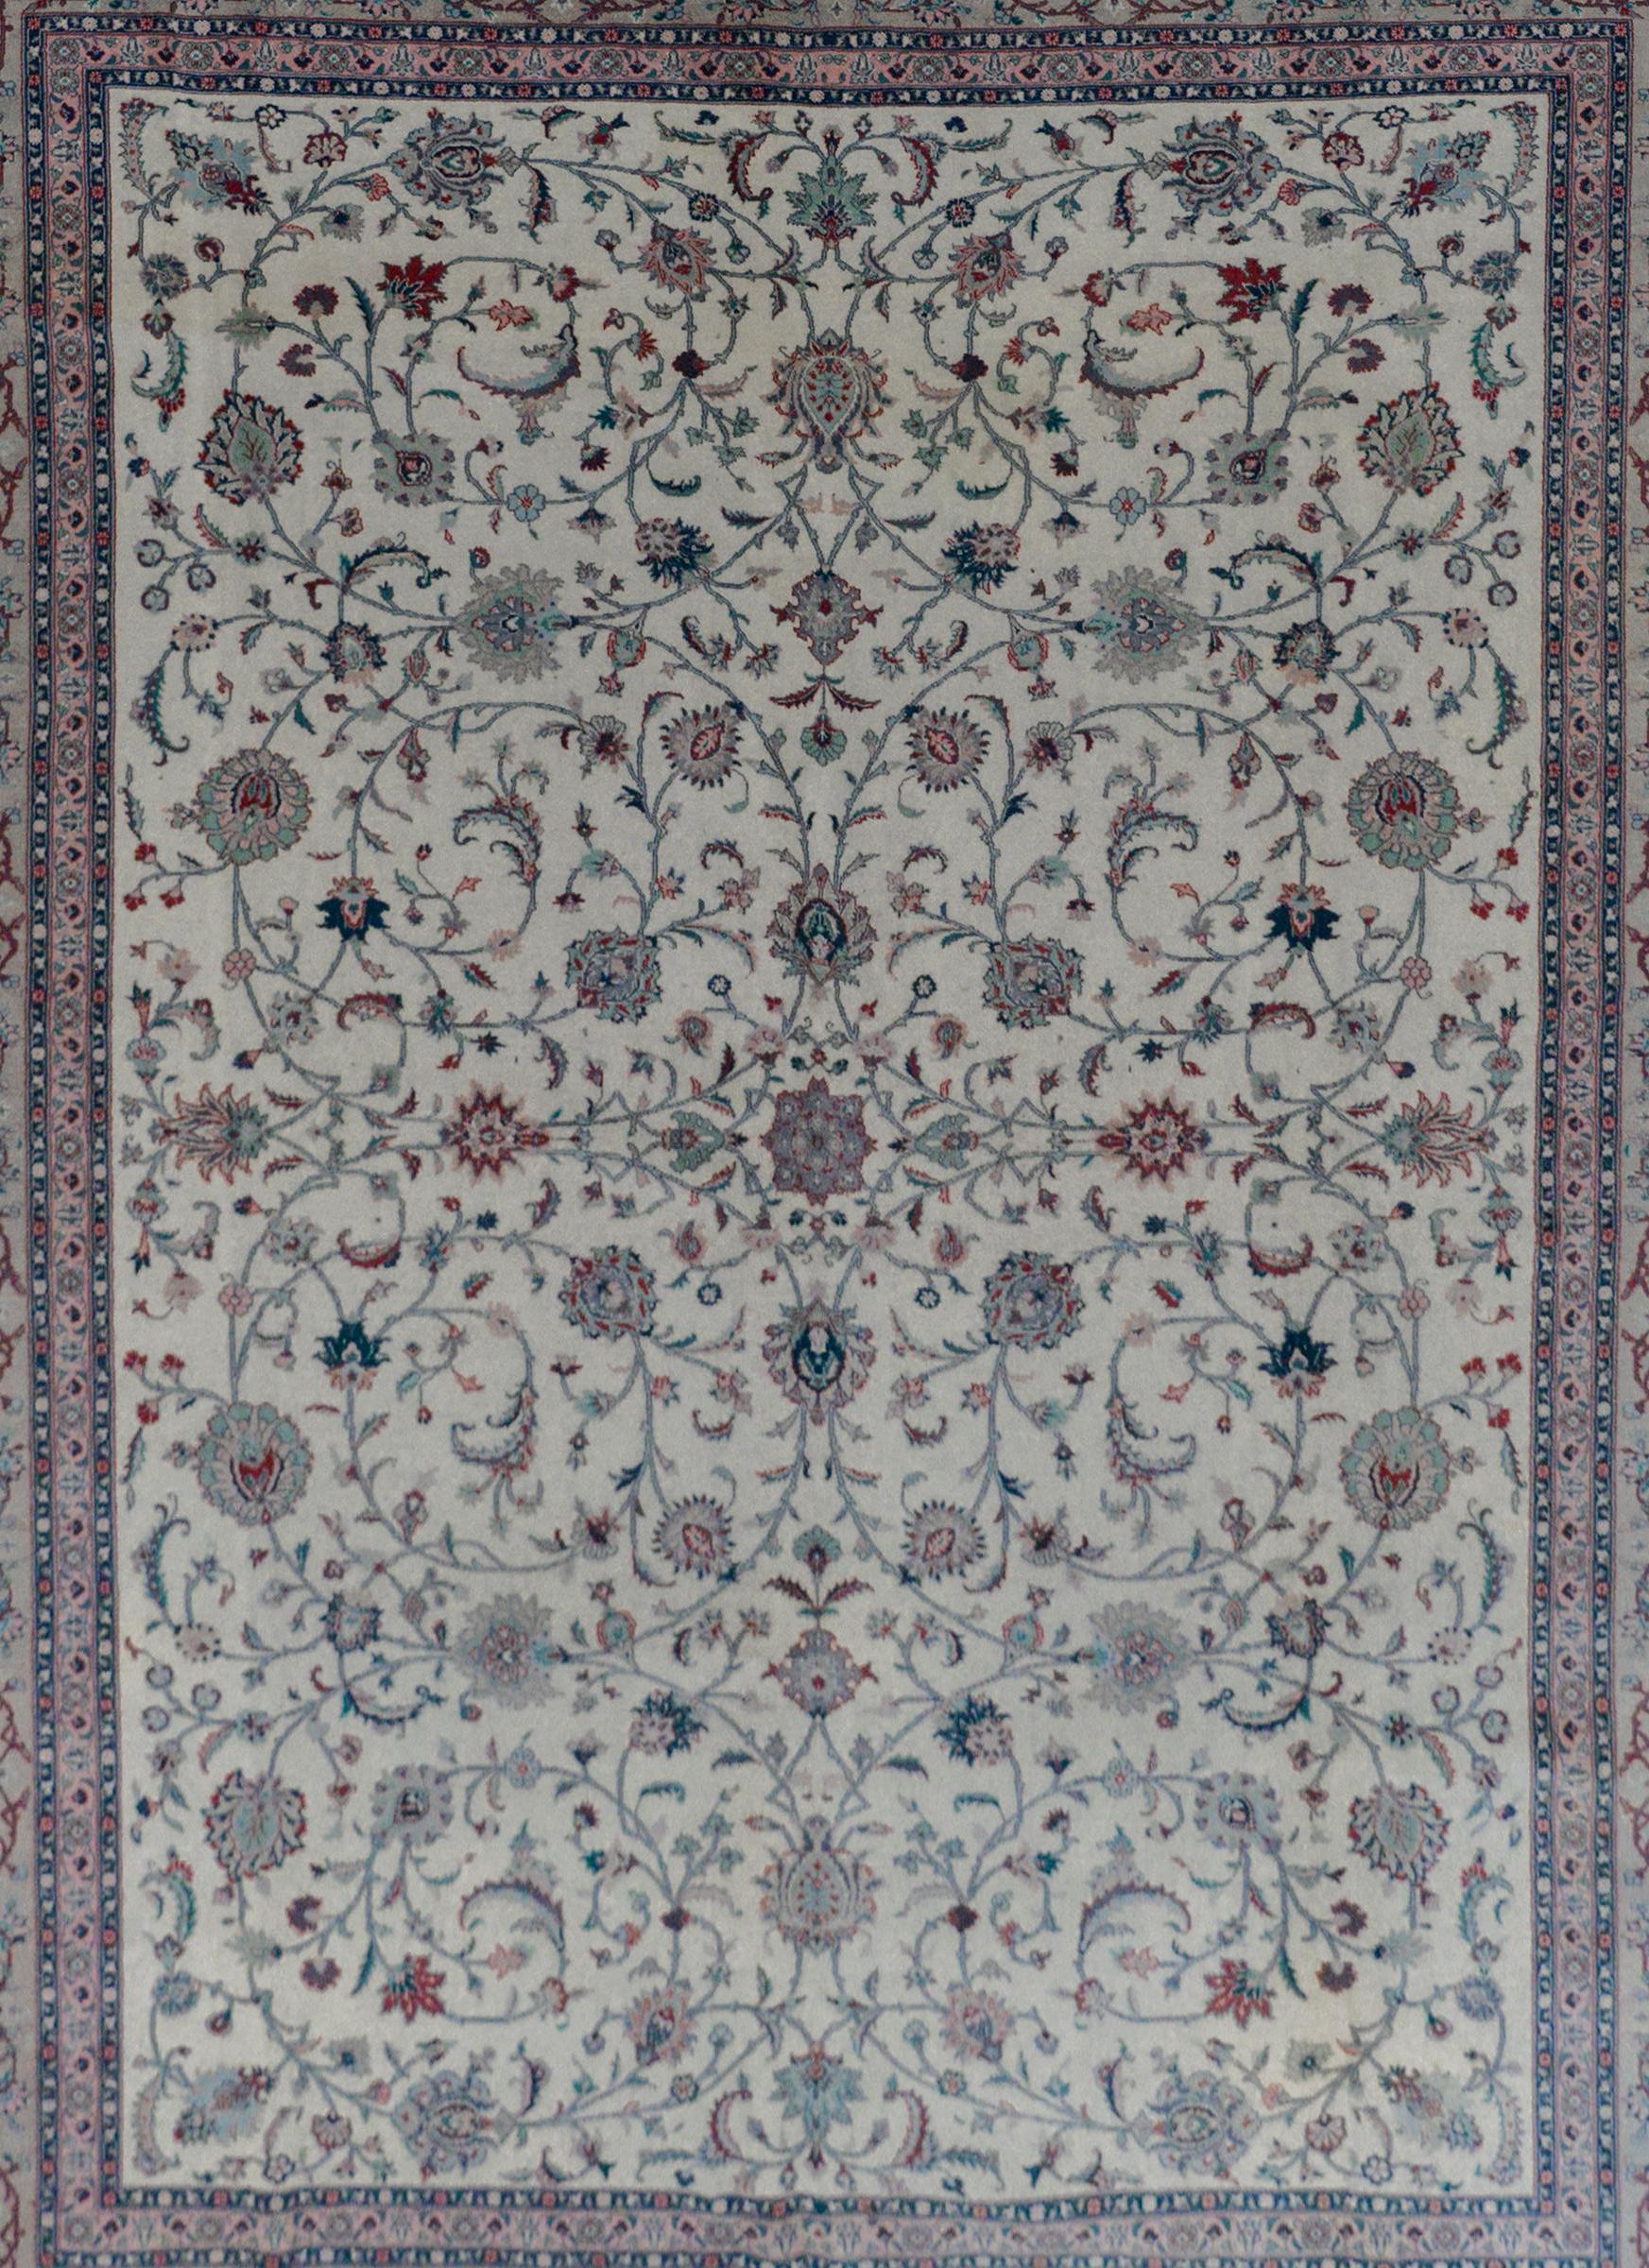 Ein fantastischer indischer Tabriz-Teppich im Vintage-Stil mit einem Allover-Muster aus großflächigen Blumen und Ranken in Karminrot, hellem und dunklem Indigo, Petrol und Rosa auf cremefarbenem Hintergrund. Die Umrandung ist mit einem floralen und